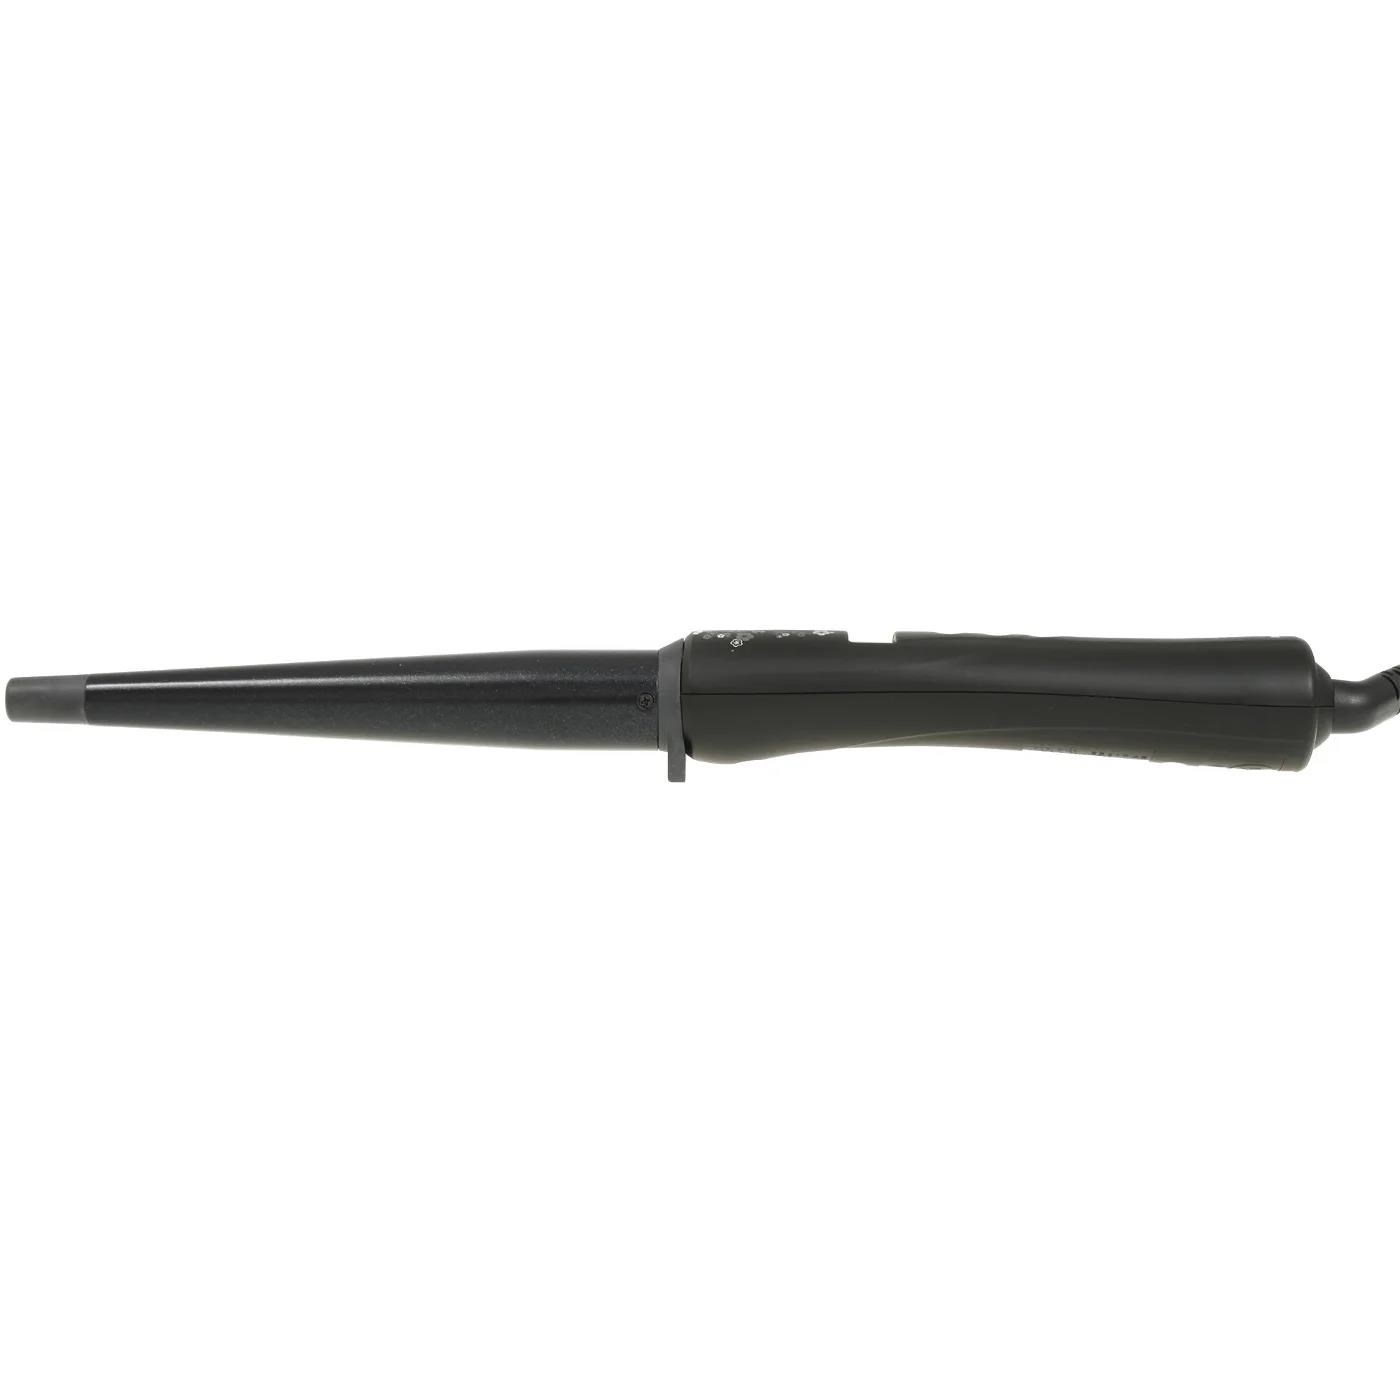 Remington Ci95 Pearl kulma na vlasy,  kónická,  automatické vypnutí,  studený hrot,  černá1 